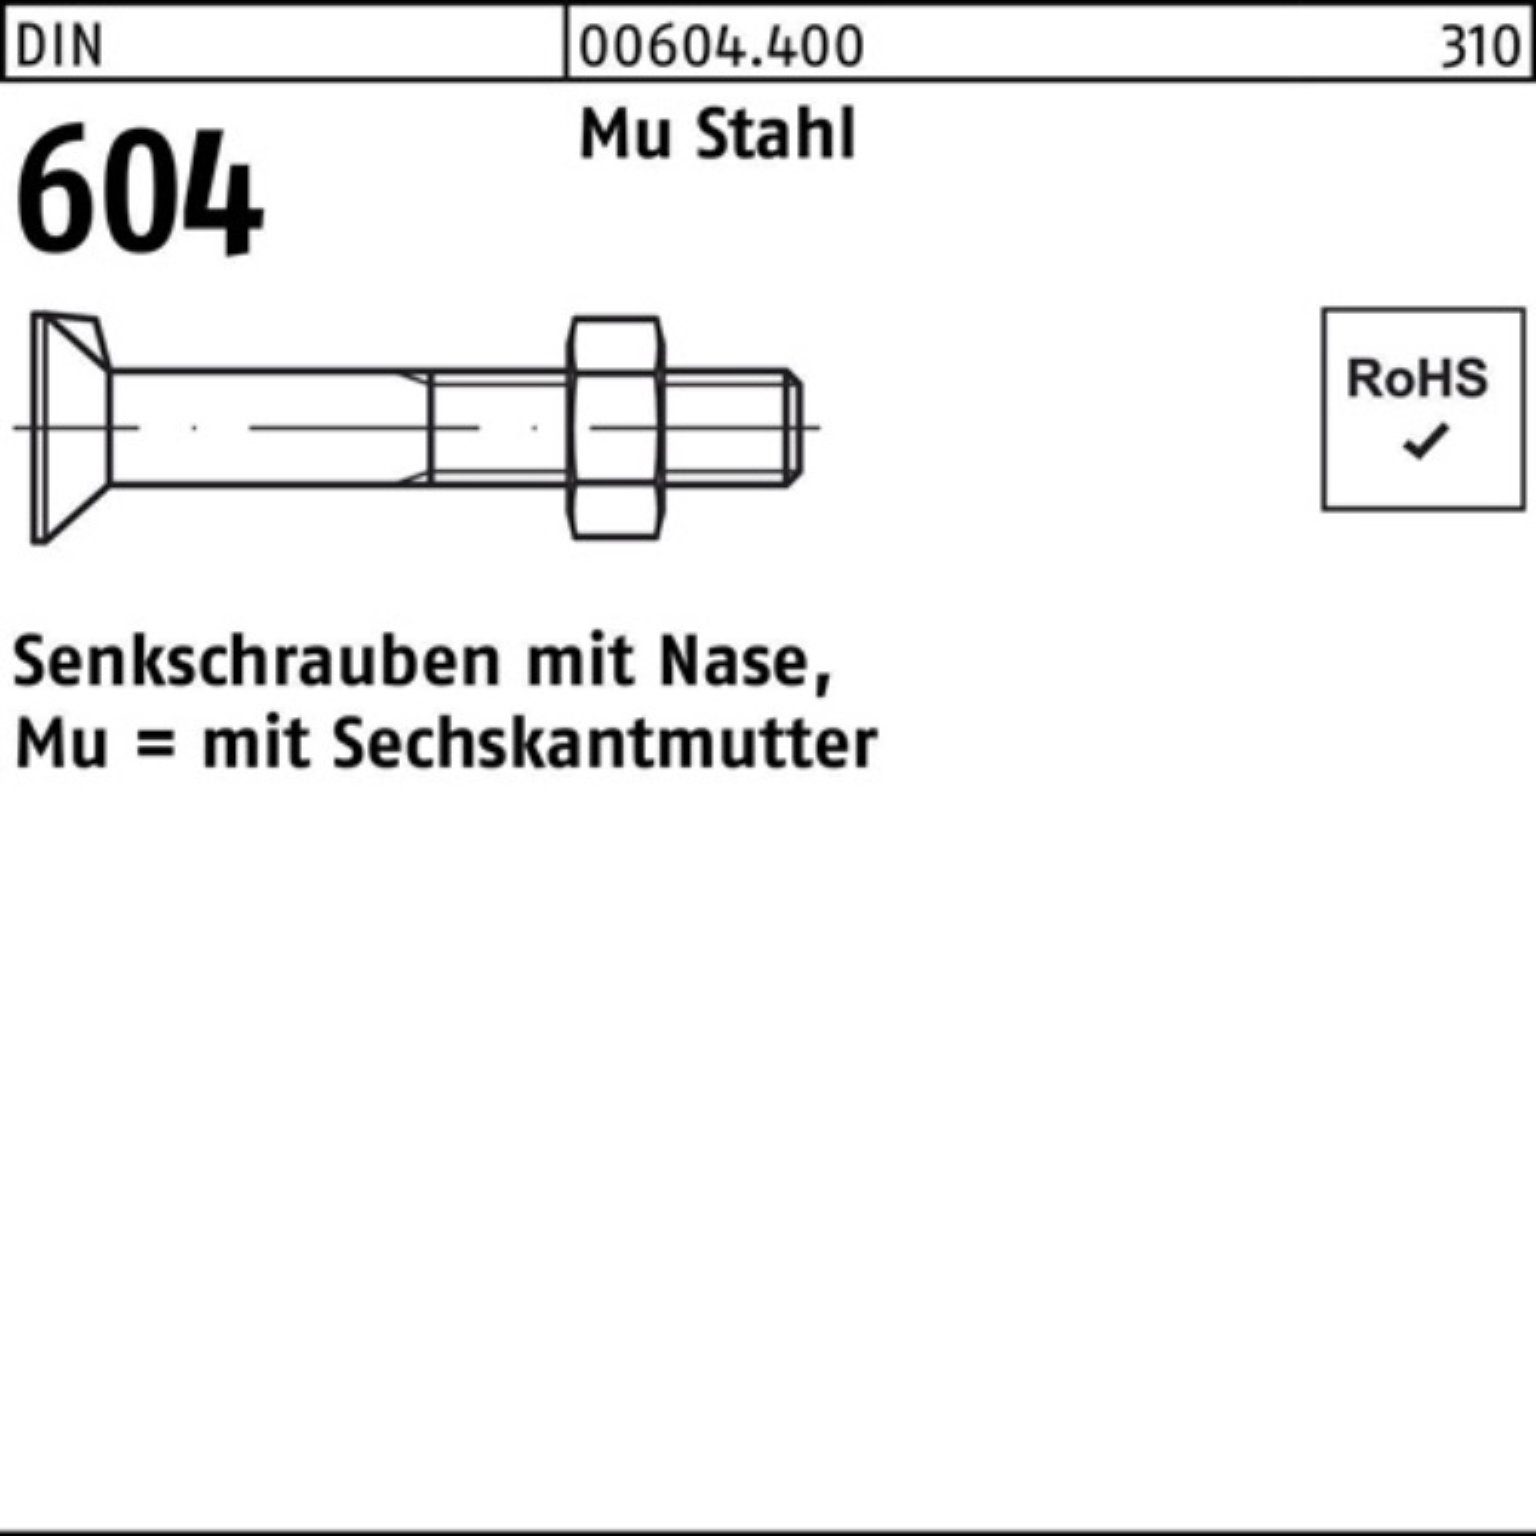 Reyher Senkschraube 200er Nase/6-ktmutter 25 Stahl 20 604 DIN 4.6 Pack Senkschraube Mu M8x